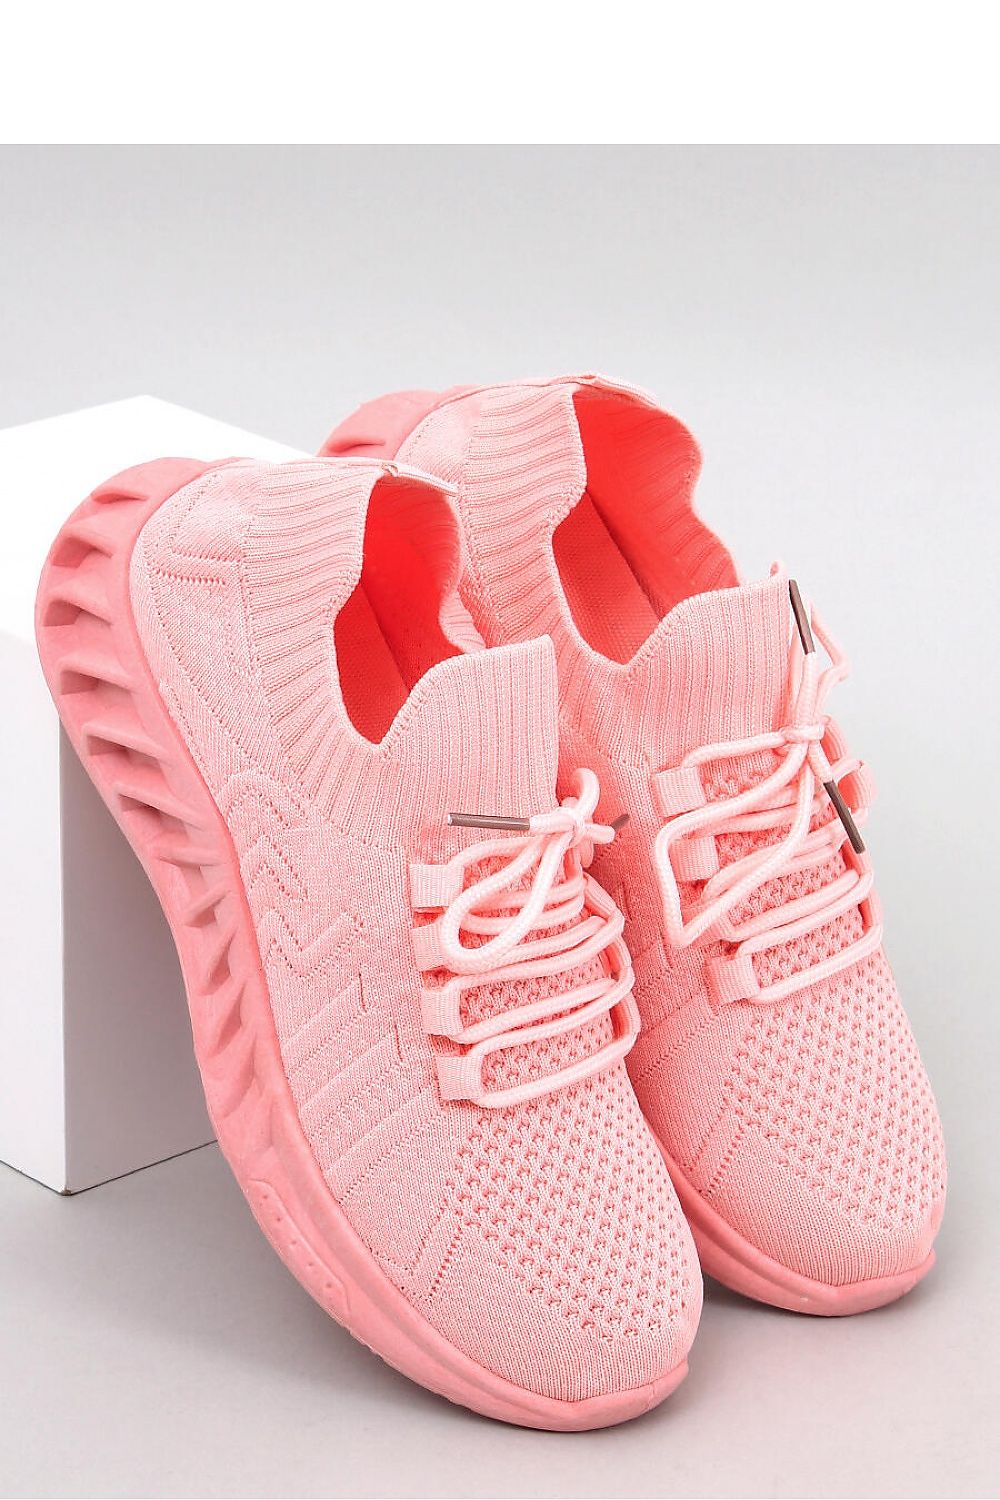 Αθλητικά Γυναικεία Παπούτσια σε ροζ